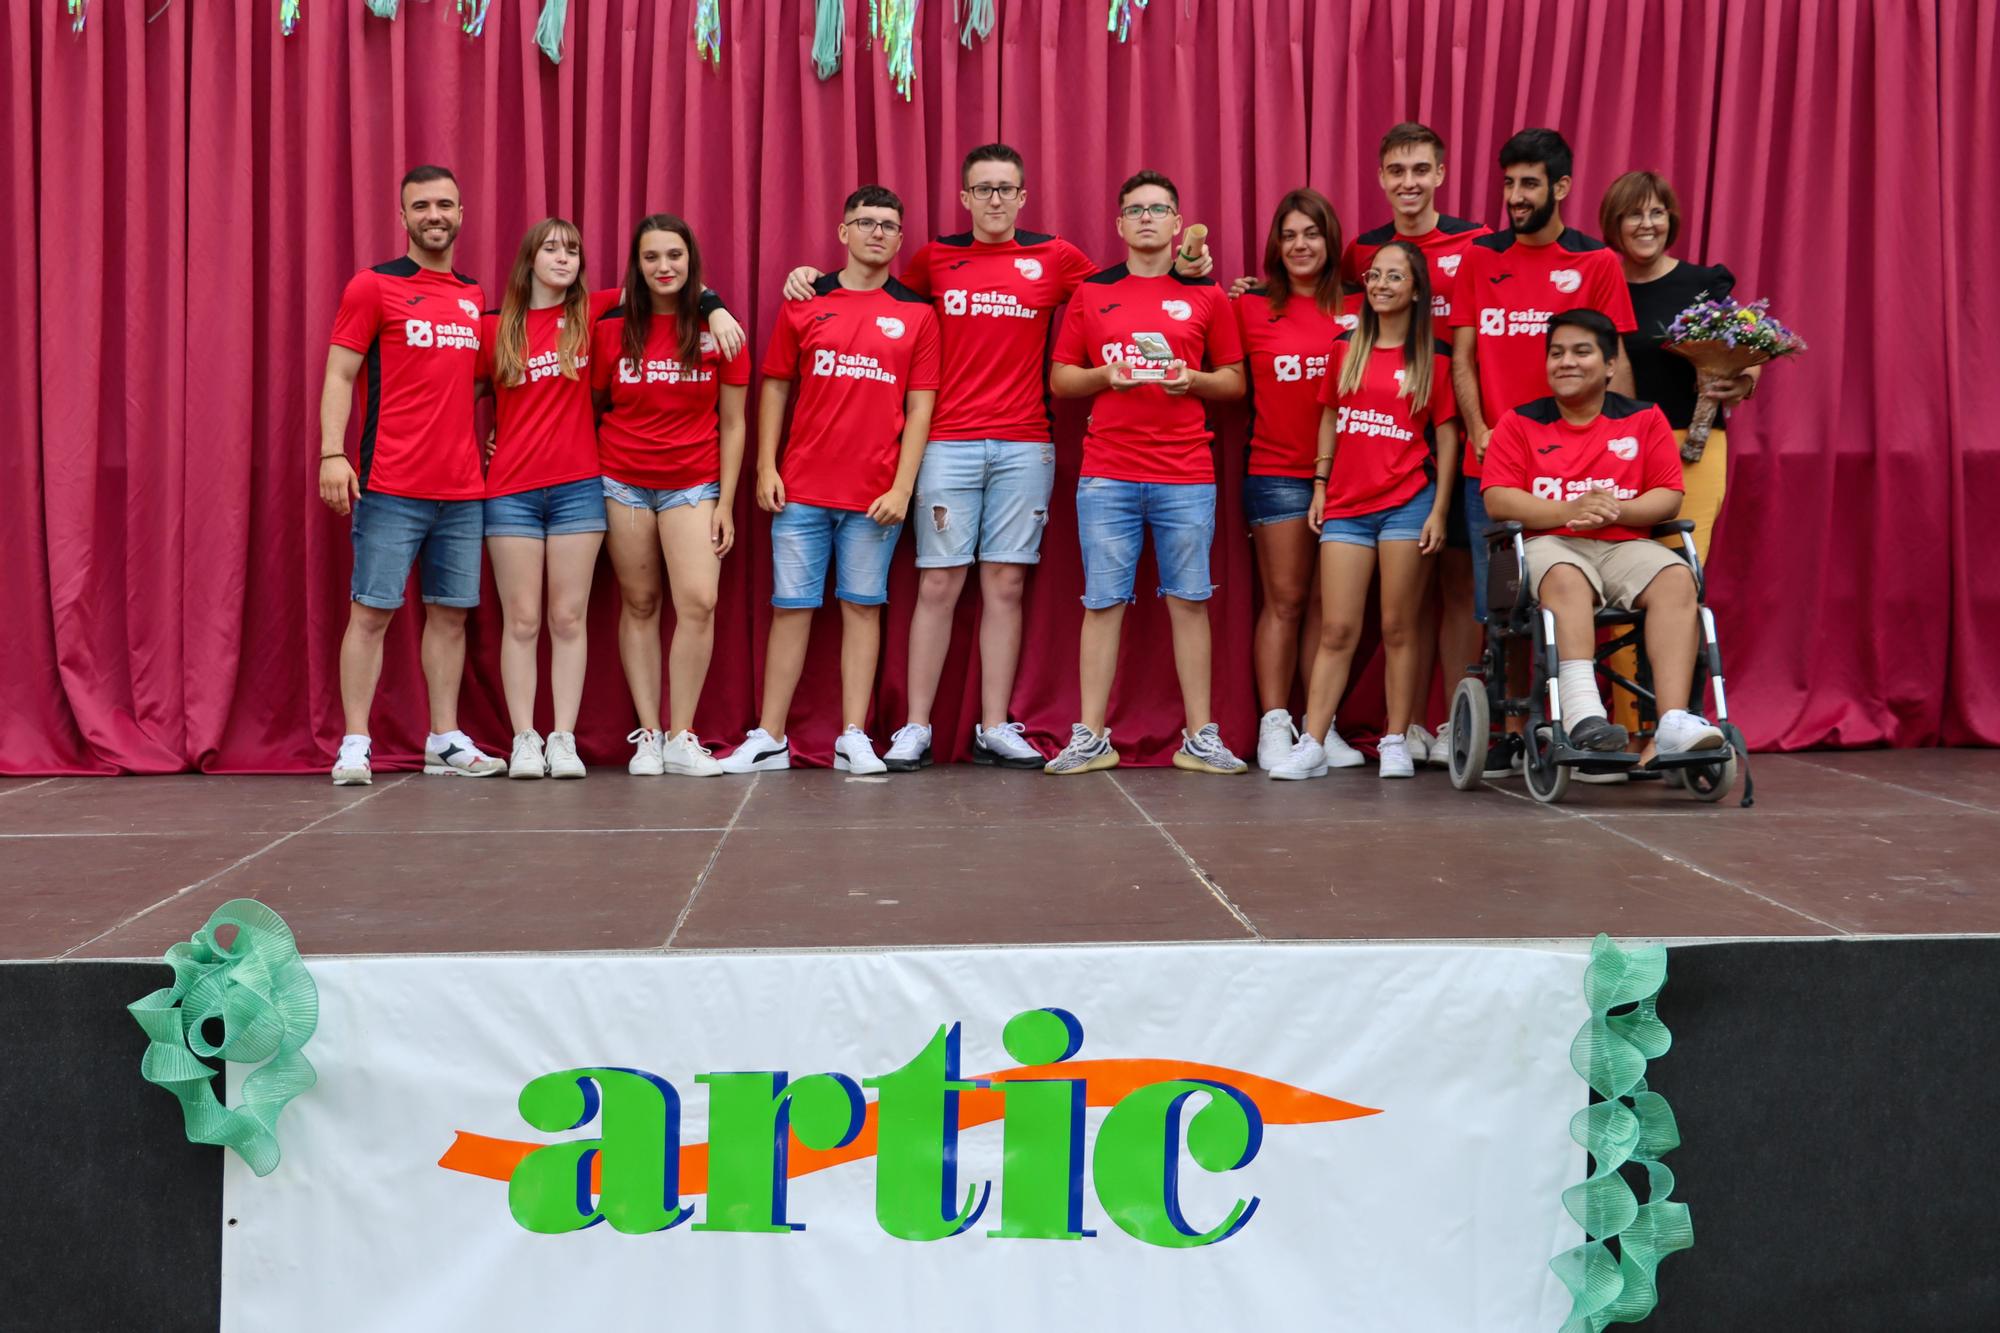 El Club Fénix de Voleibol del Barrio del Cristo recogiendo el premio Artic.